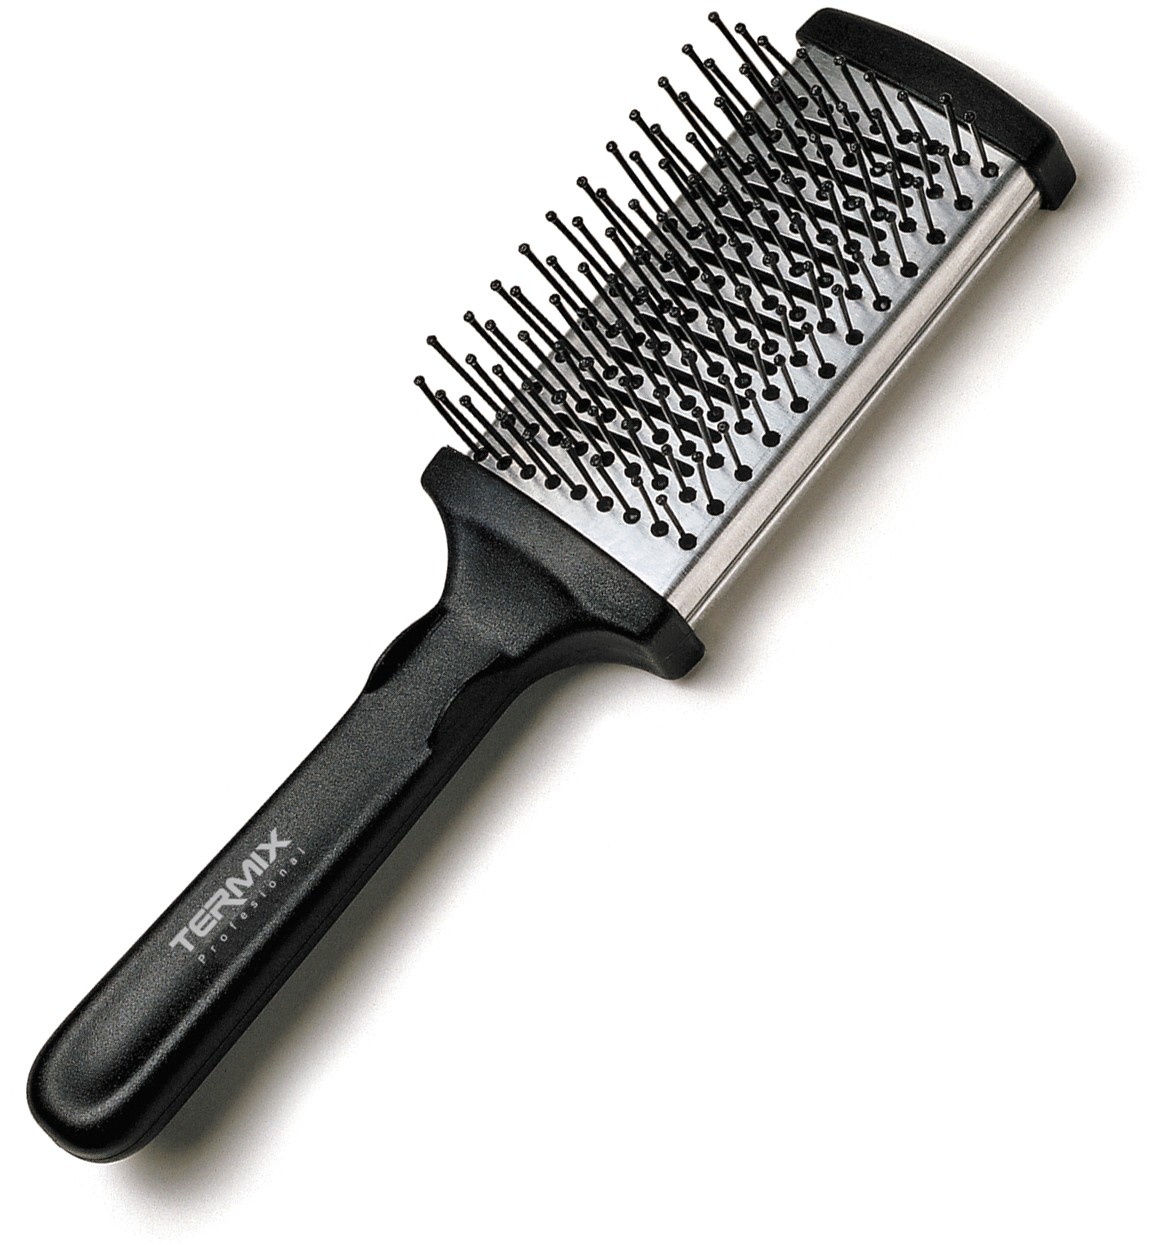  Termix Flat Thermal Hairbrush large 